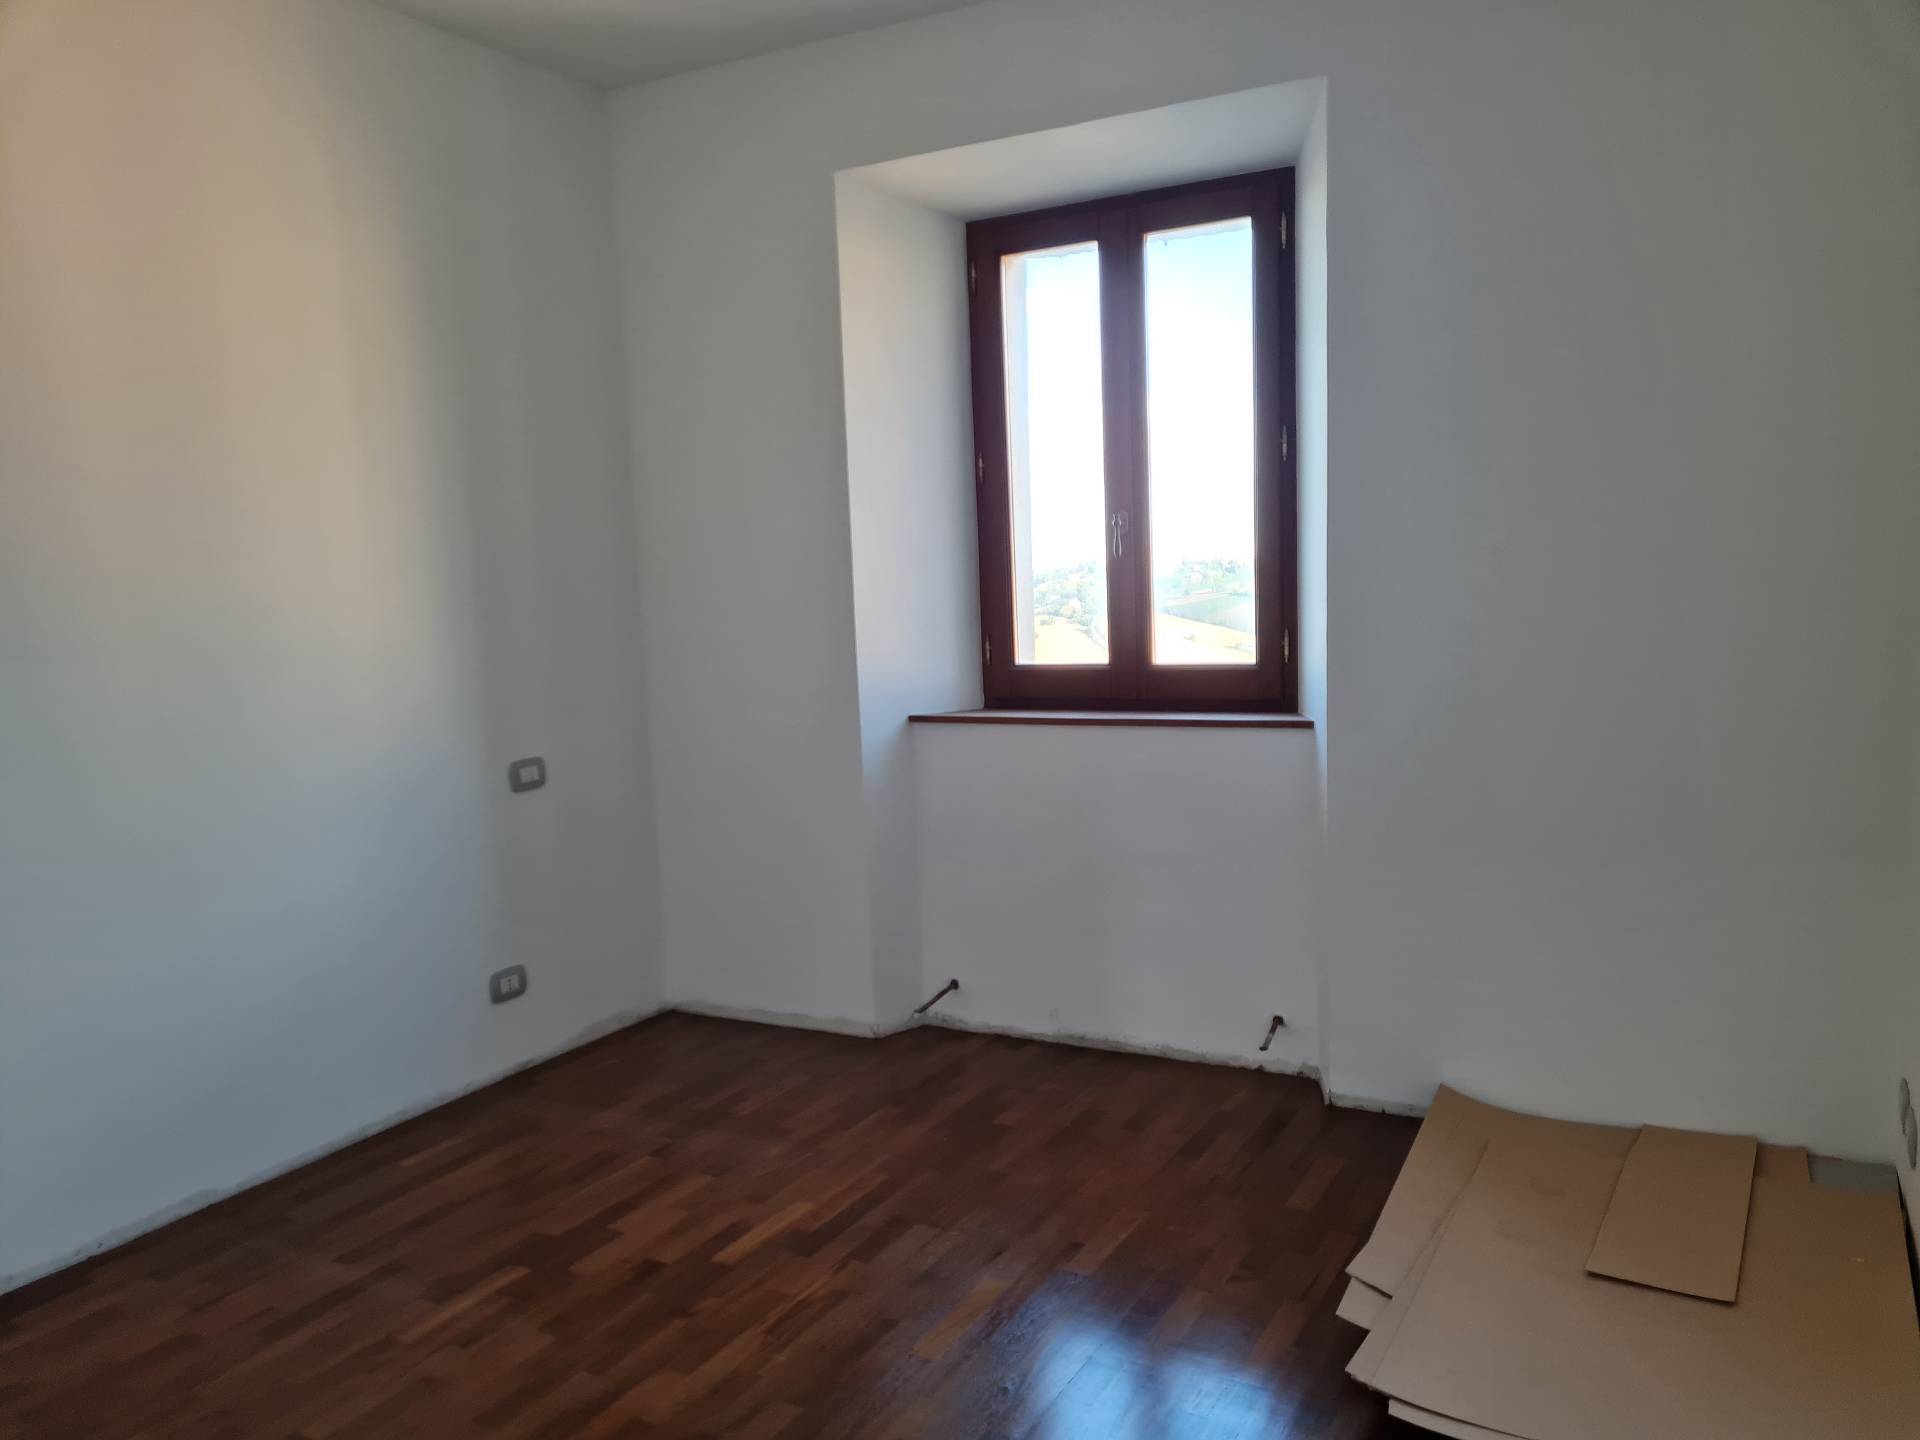 Apartment in Francavilla d'Ete (Fermo)